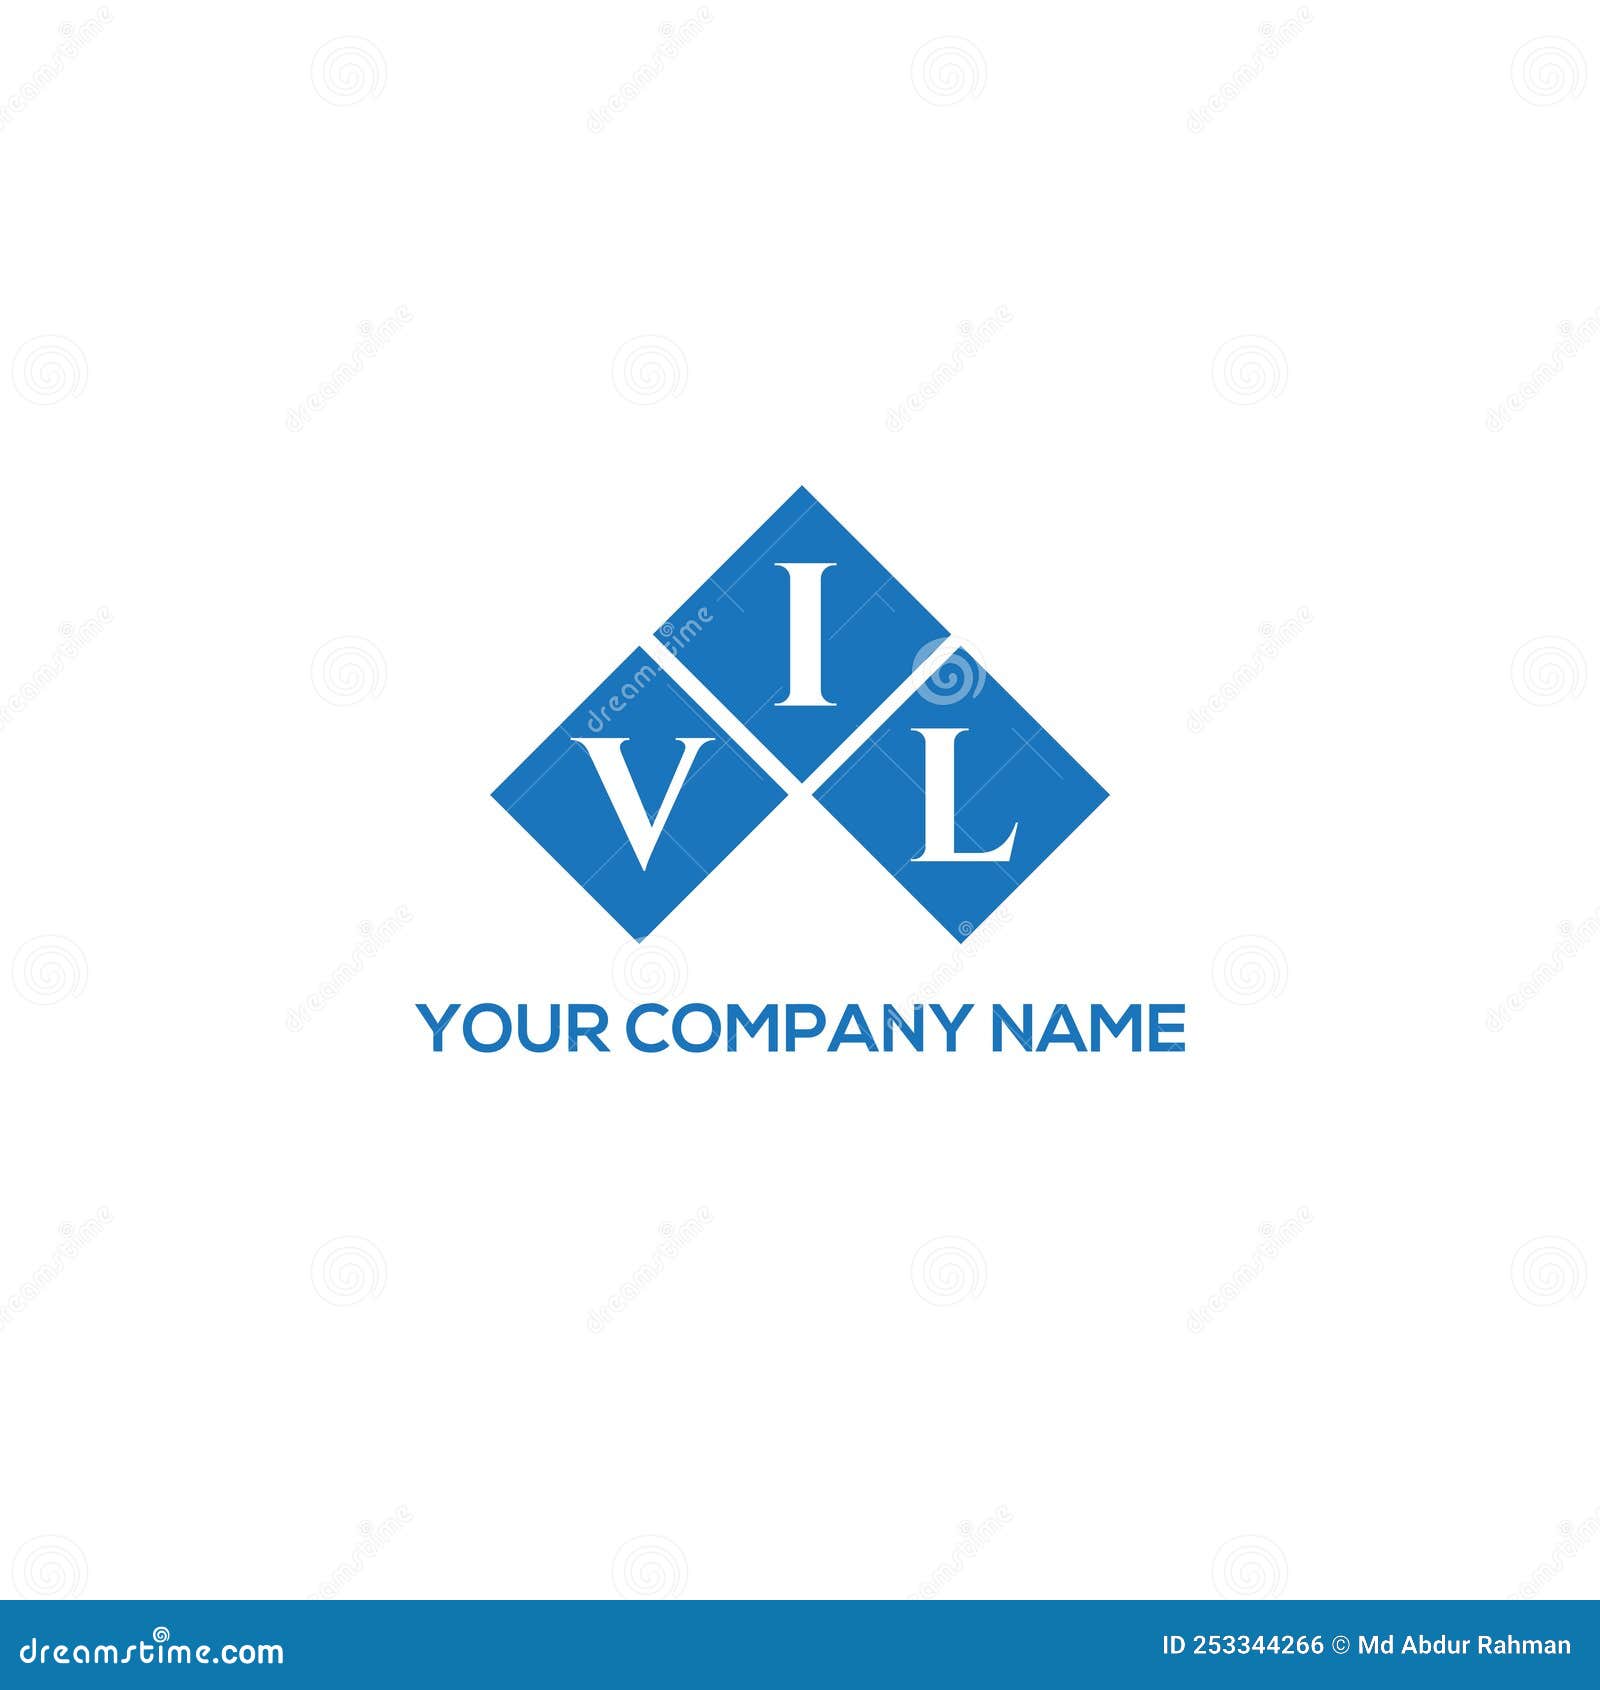 vil letter logo  on white background. vil creative initials letter logo